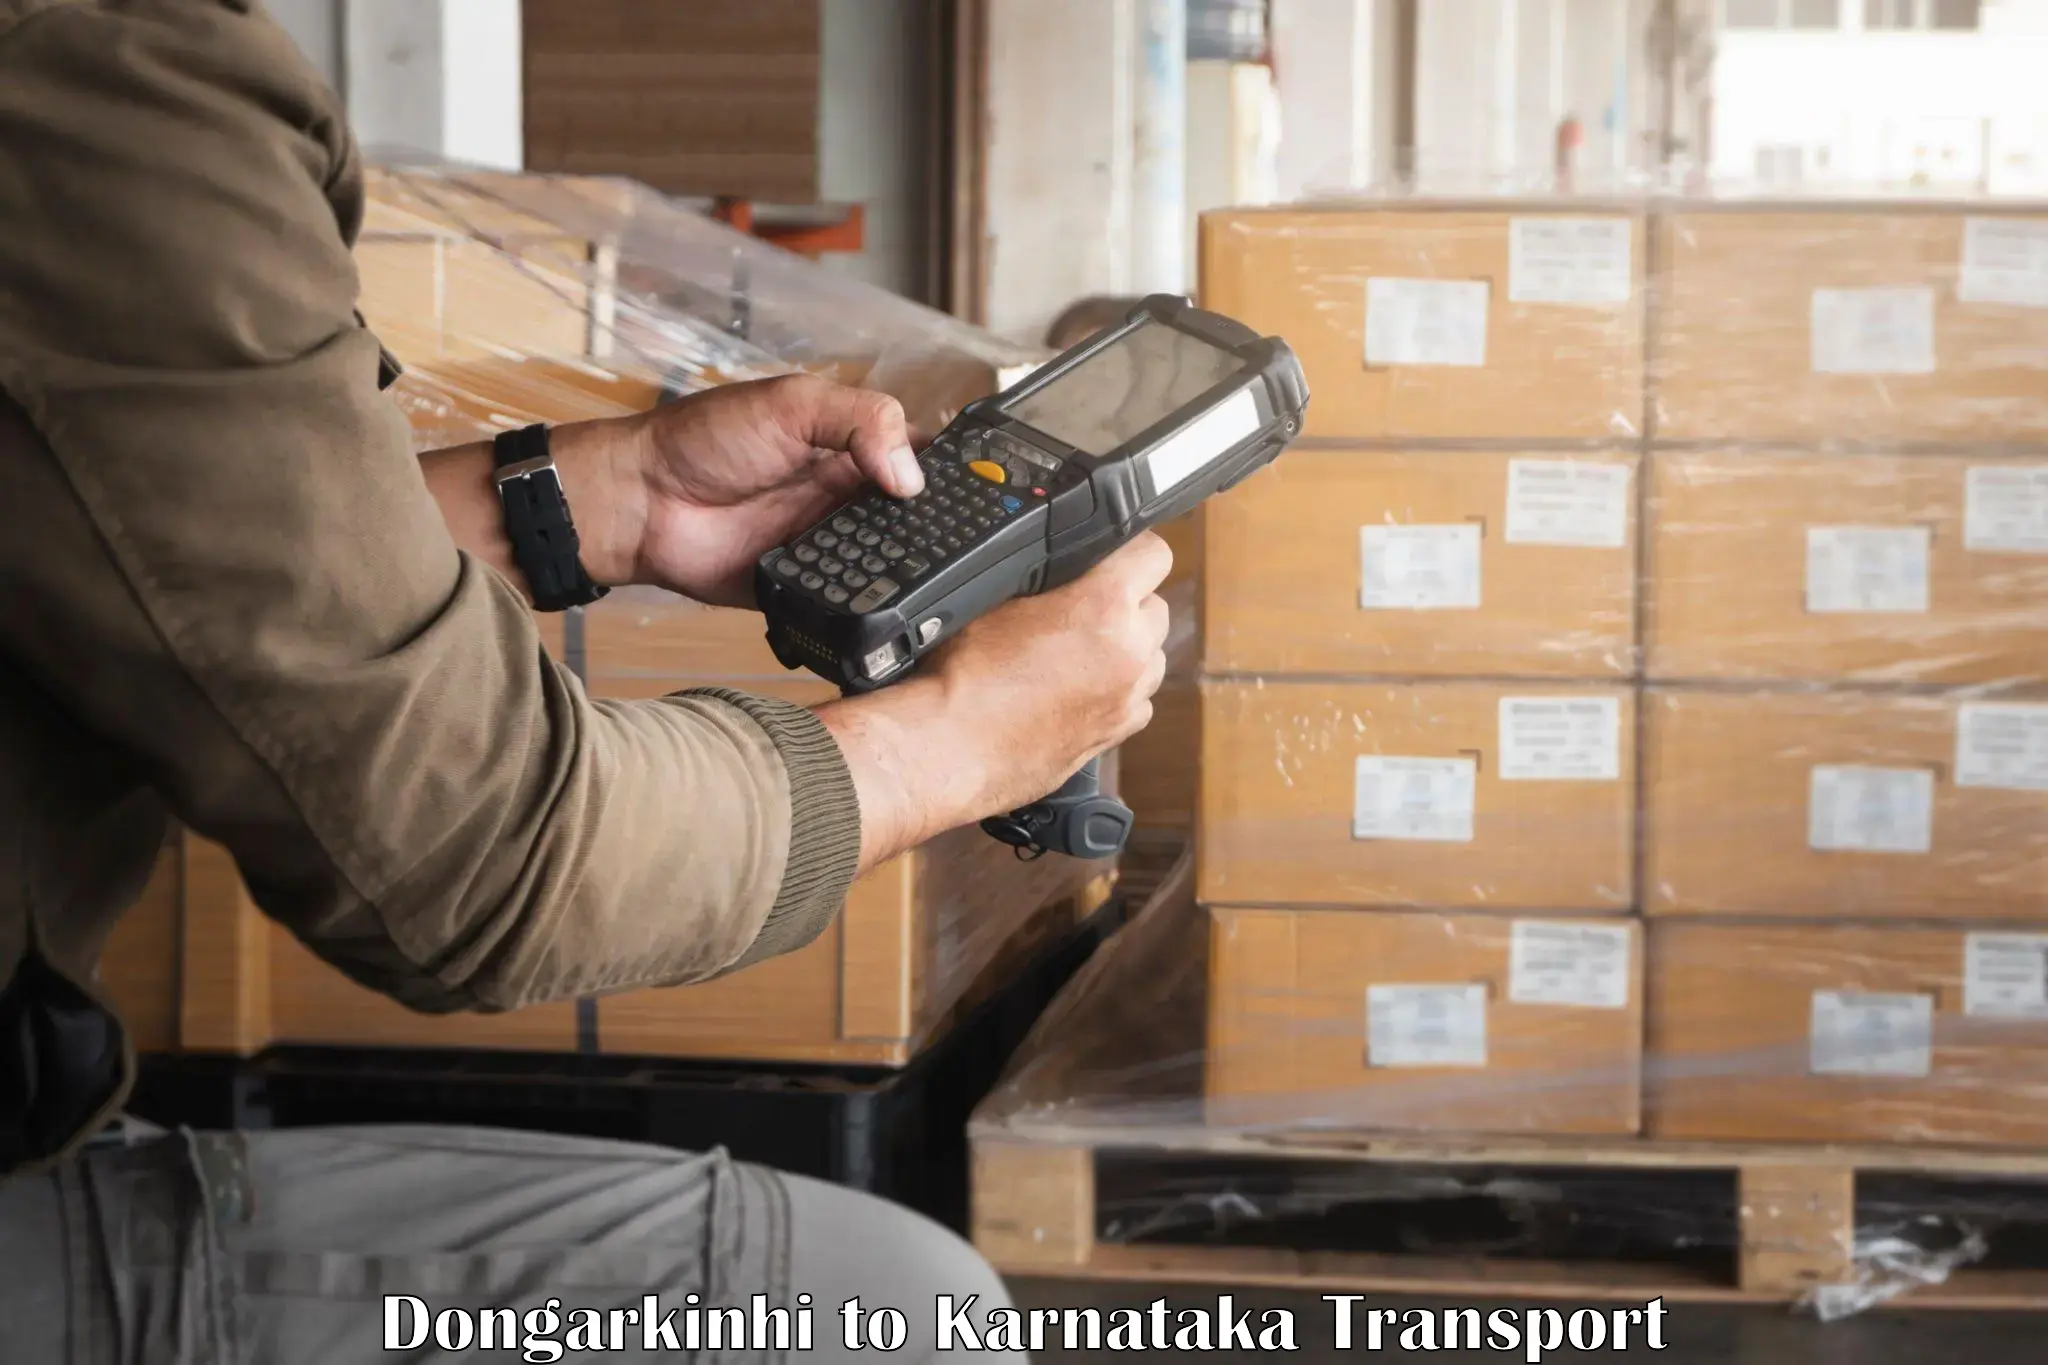 Furniture transport service Dongarkinhi to Karnataka